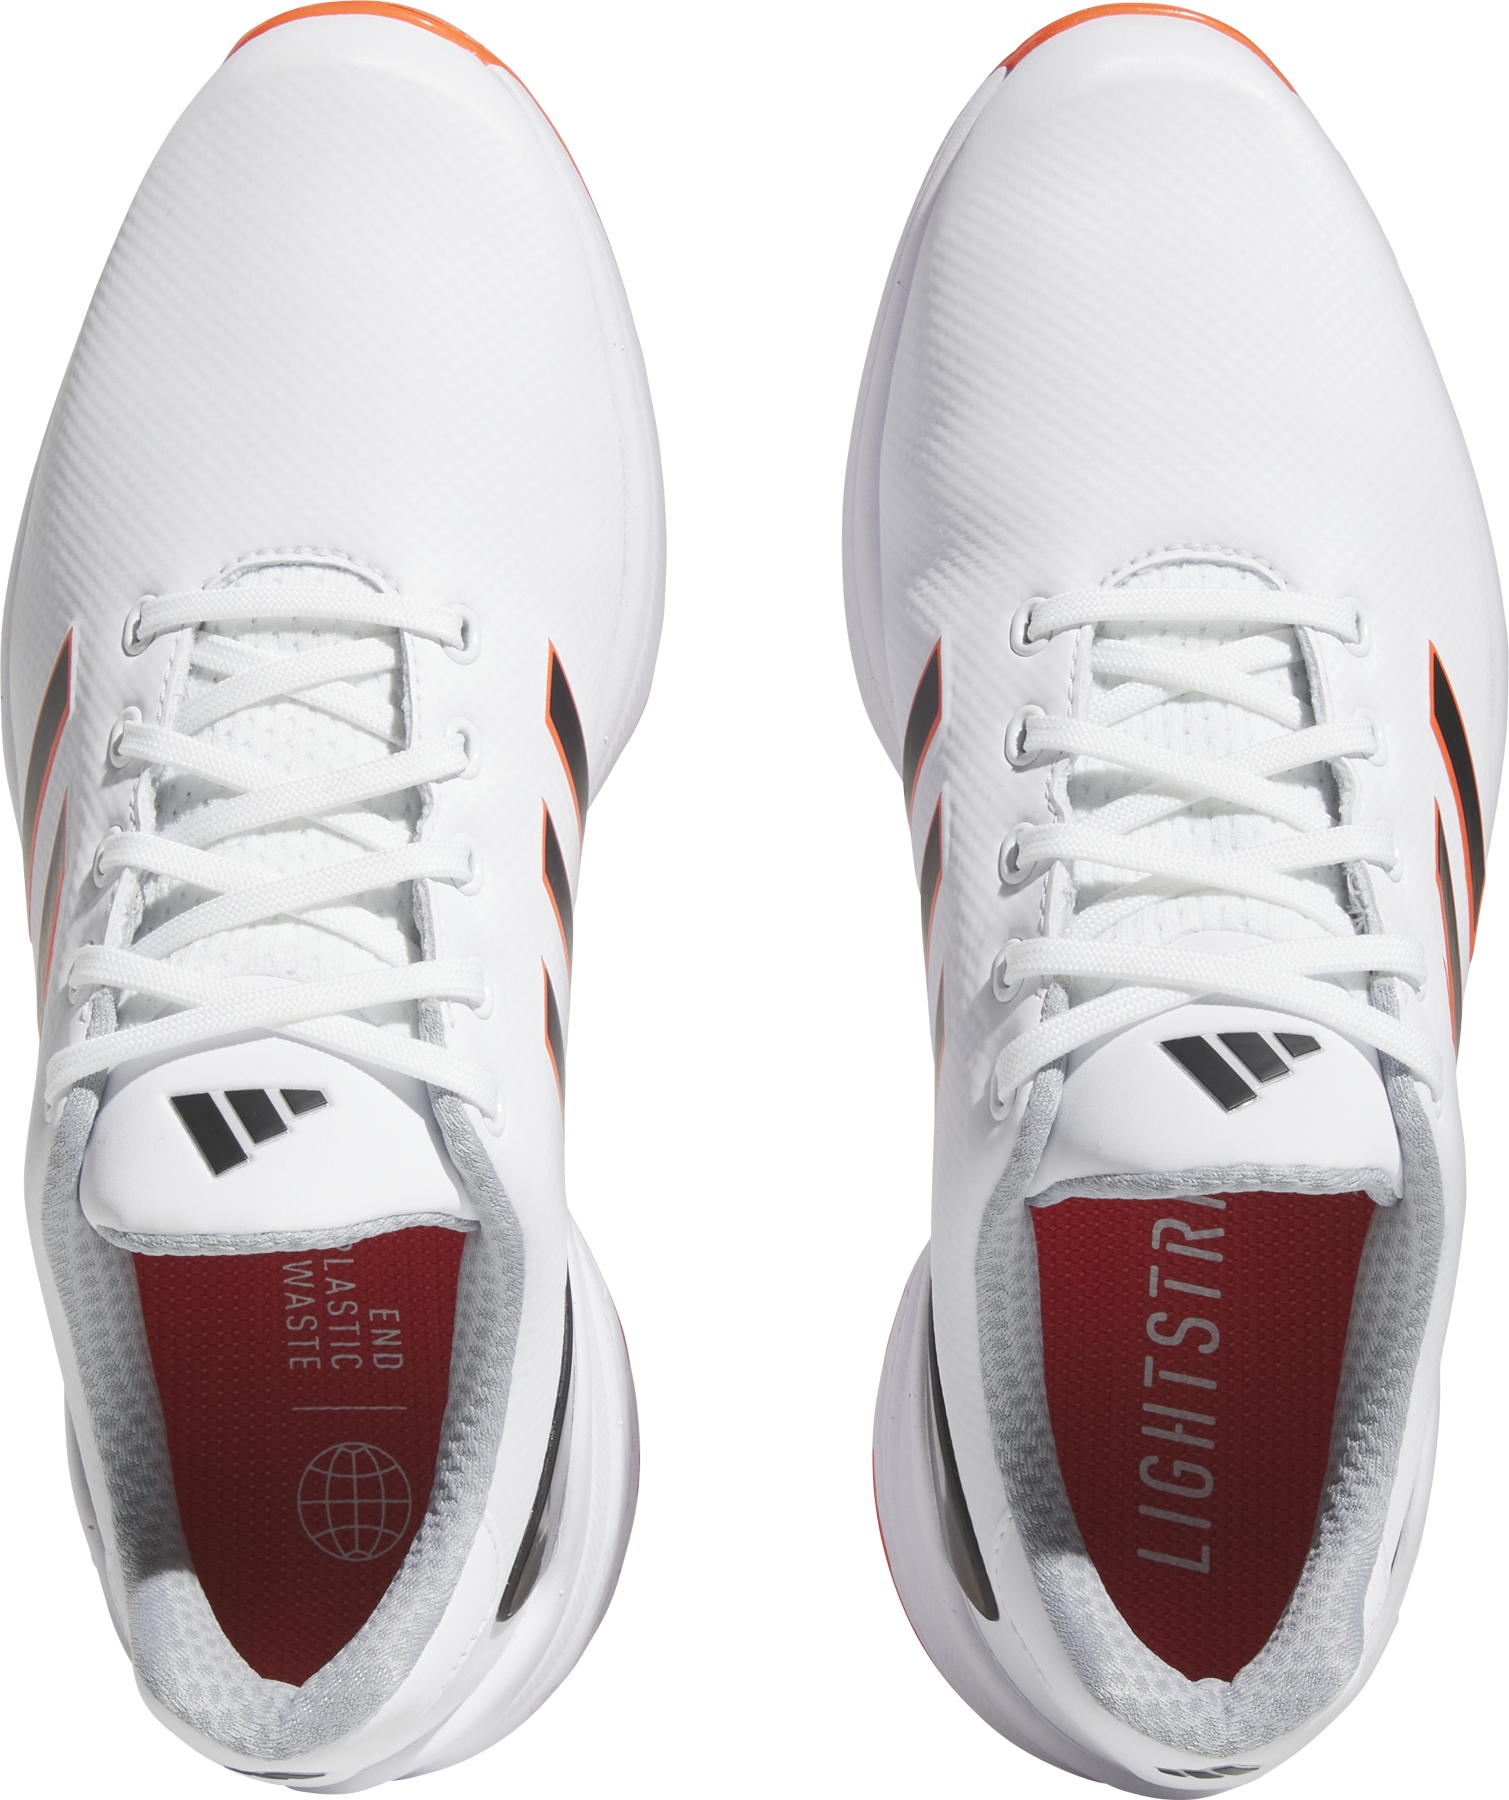 adidas ZG23 Golfschuh, white/silver/red